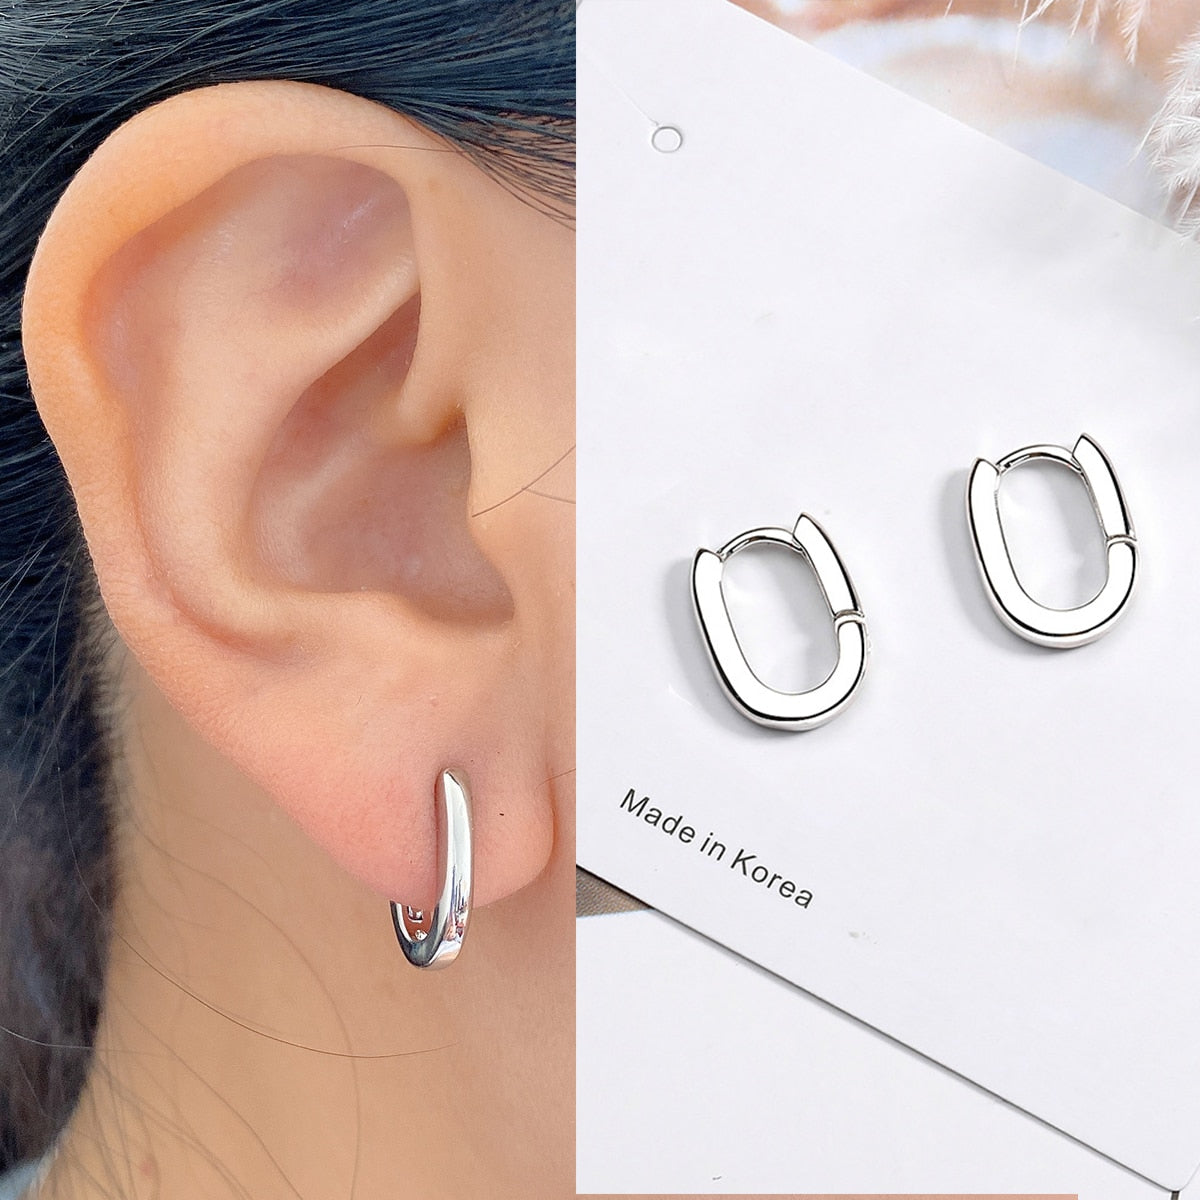 Piercing Stud Earrings Crystal Zircon Row Silver Color Huggie Earrings